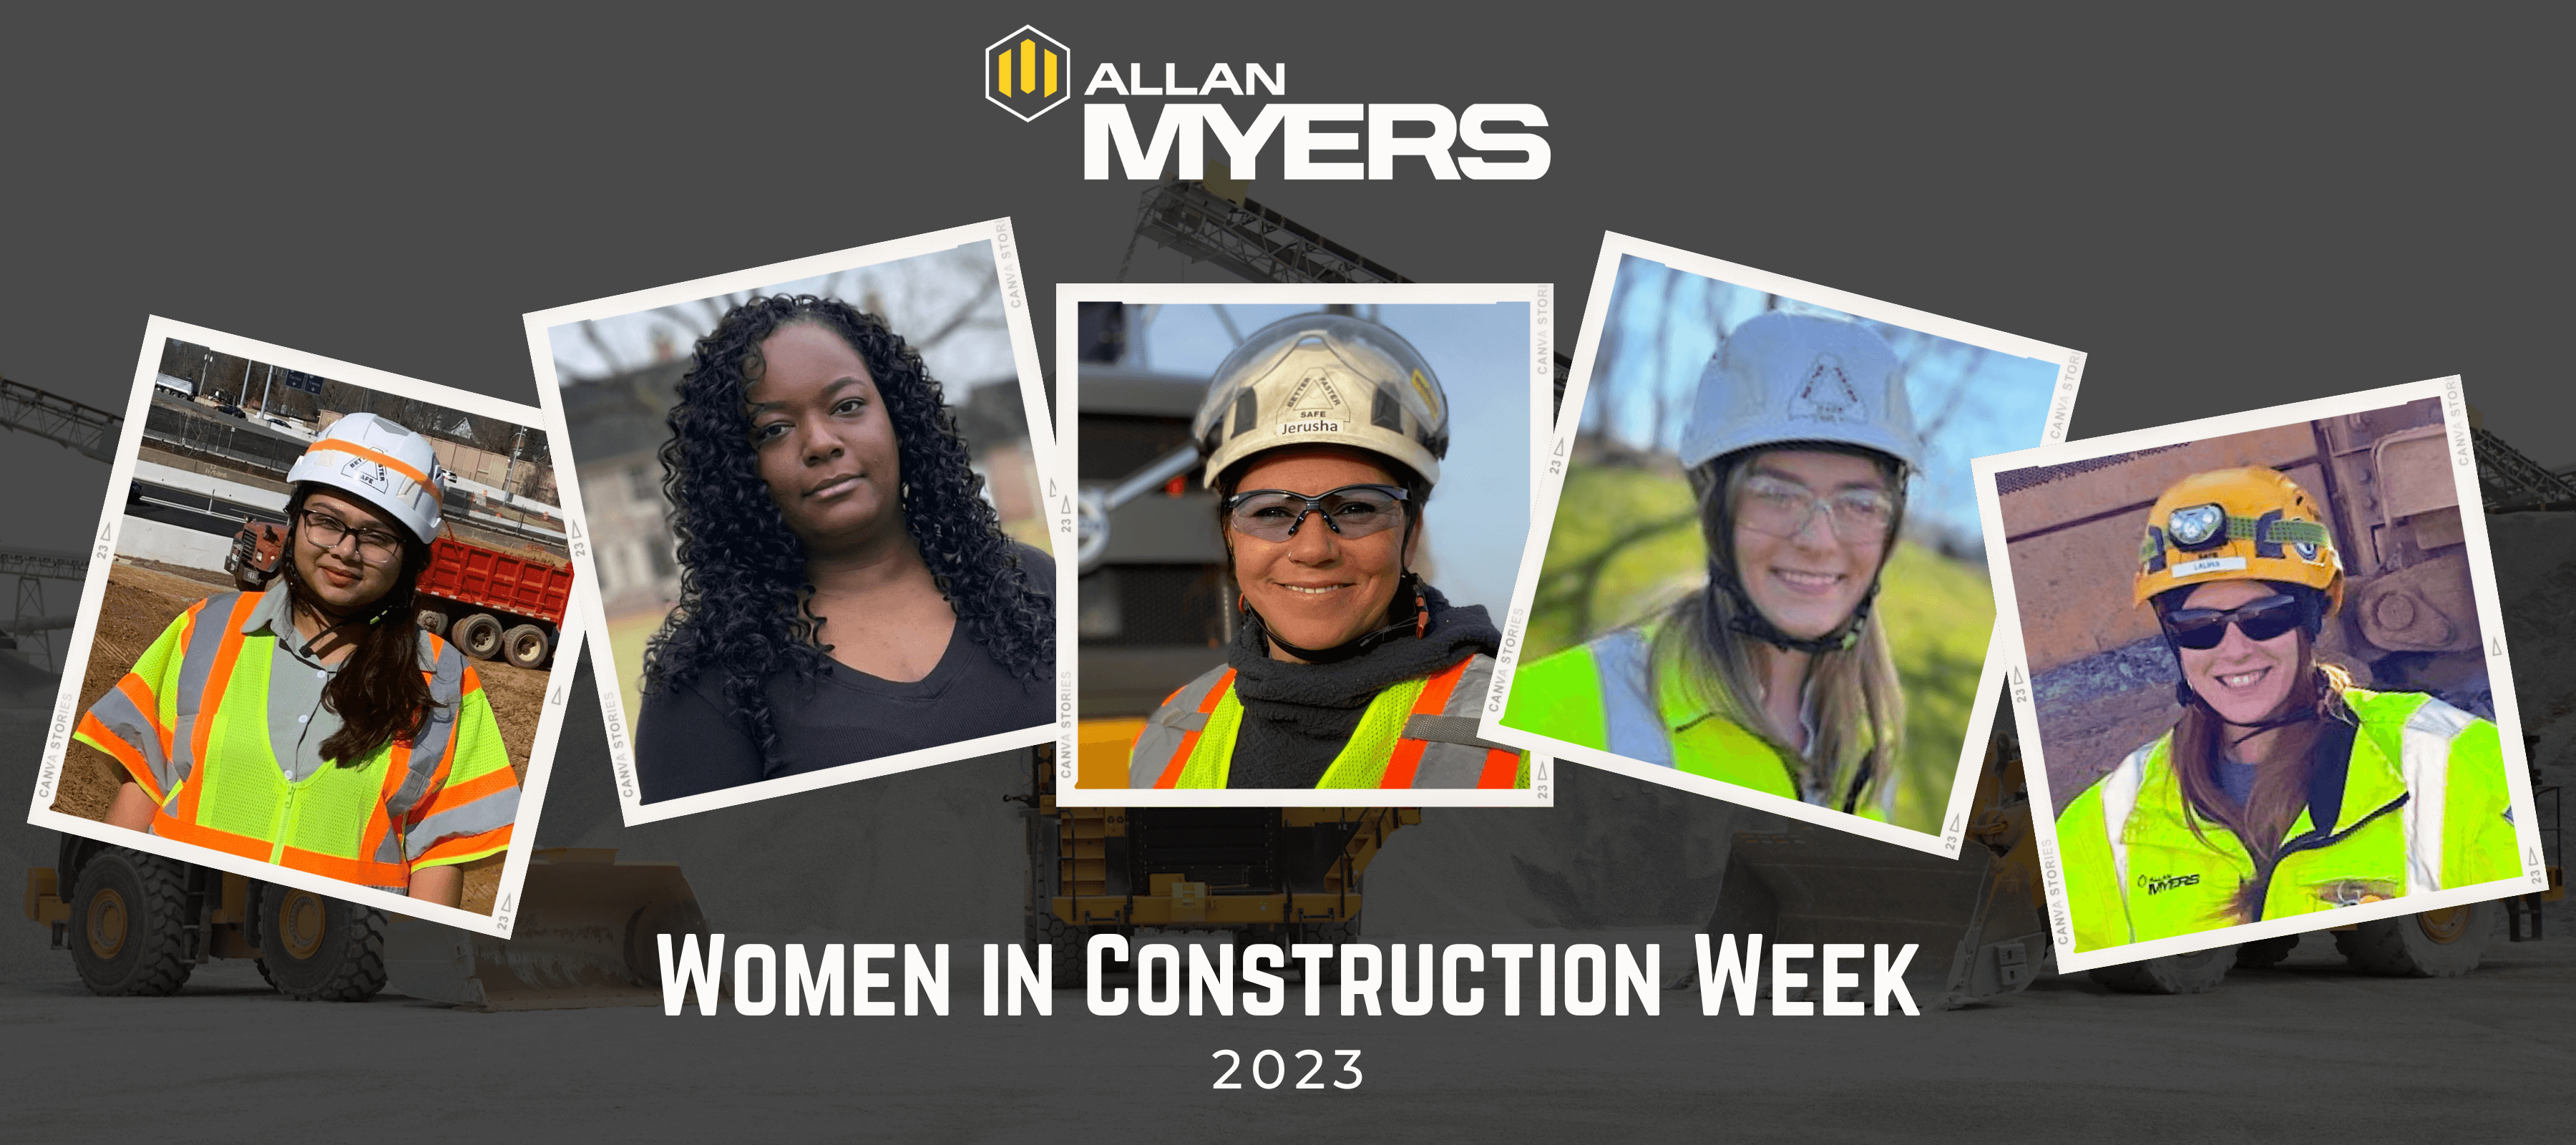 Women in Construction Week 2023 Allan Myers